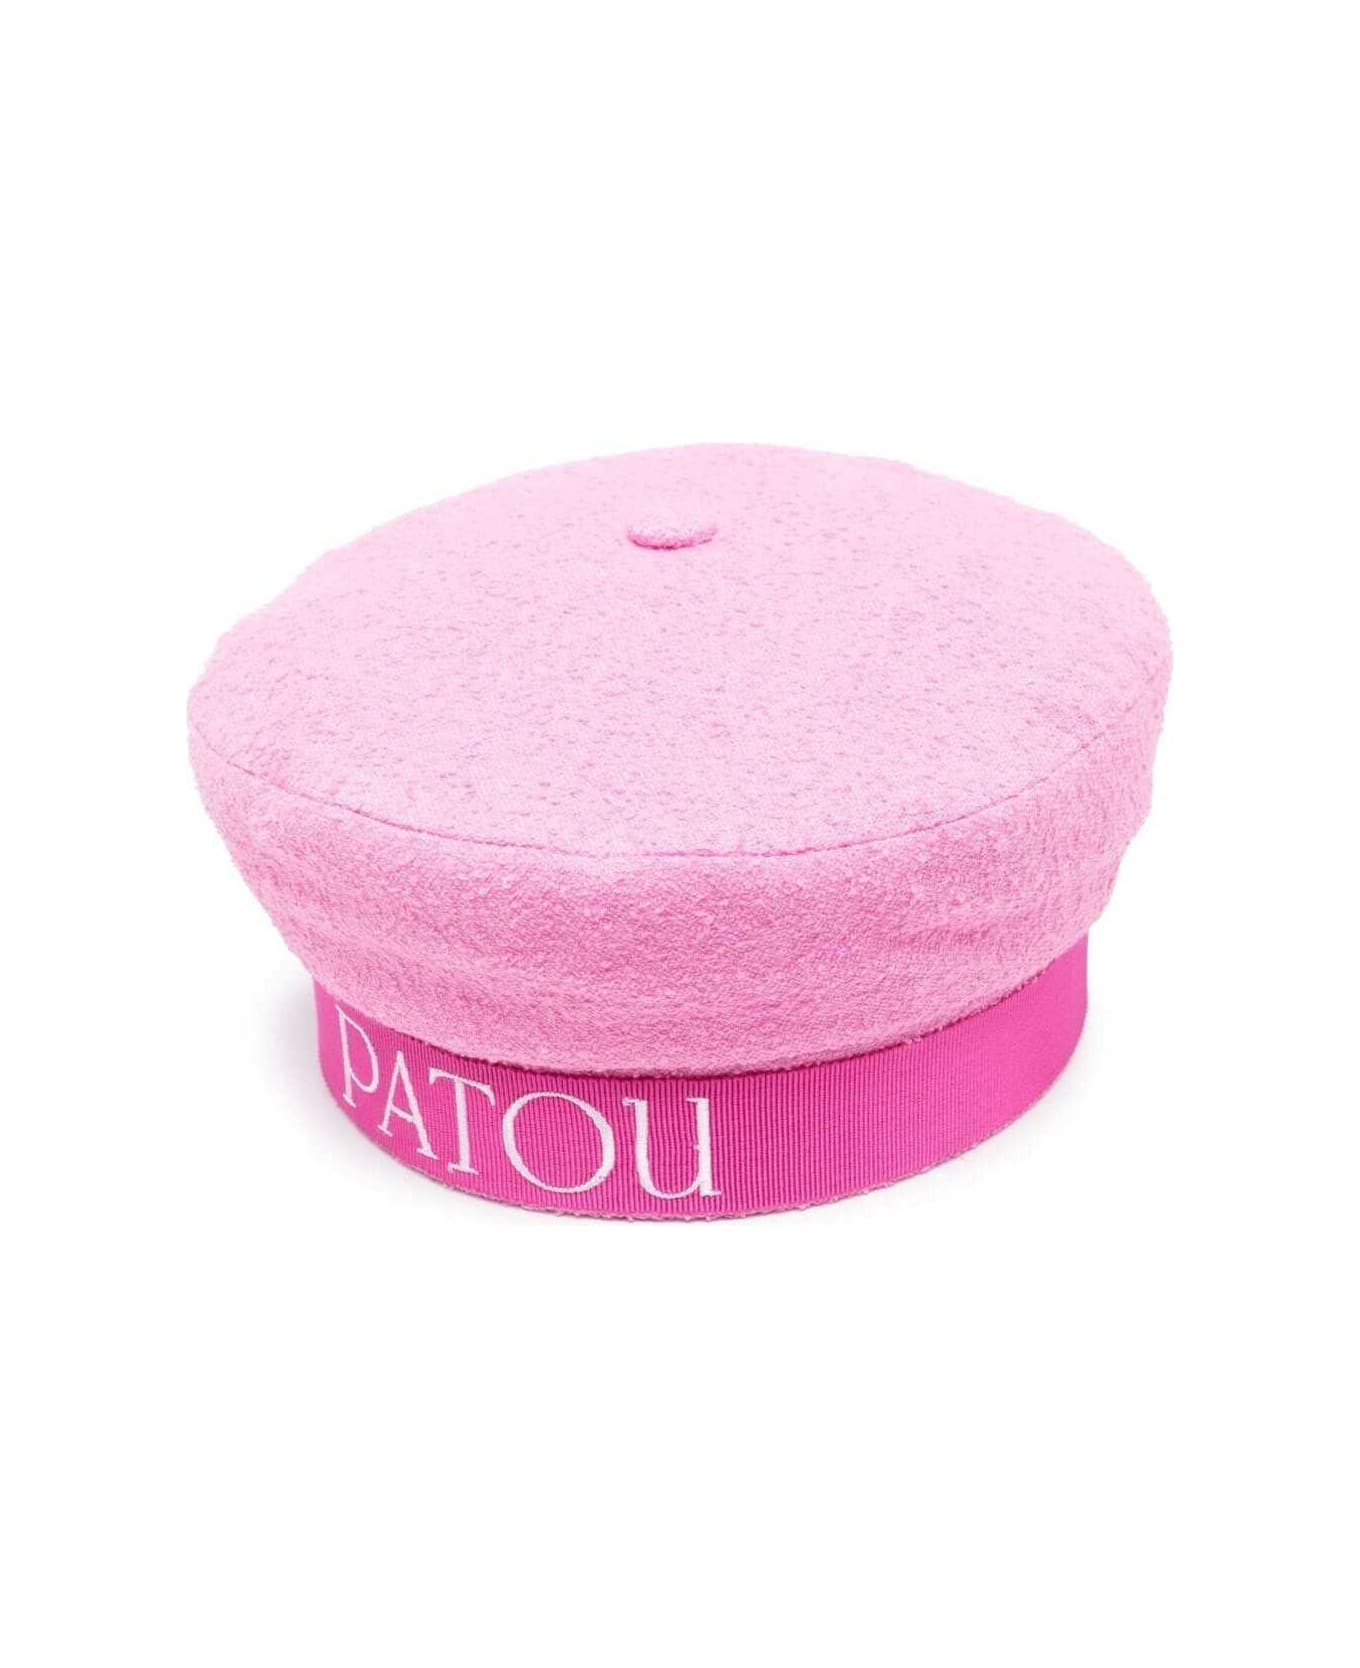 Patou Pink Sailor Hat With Logo Print In Cotton Blend Wonan - Pink